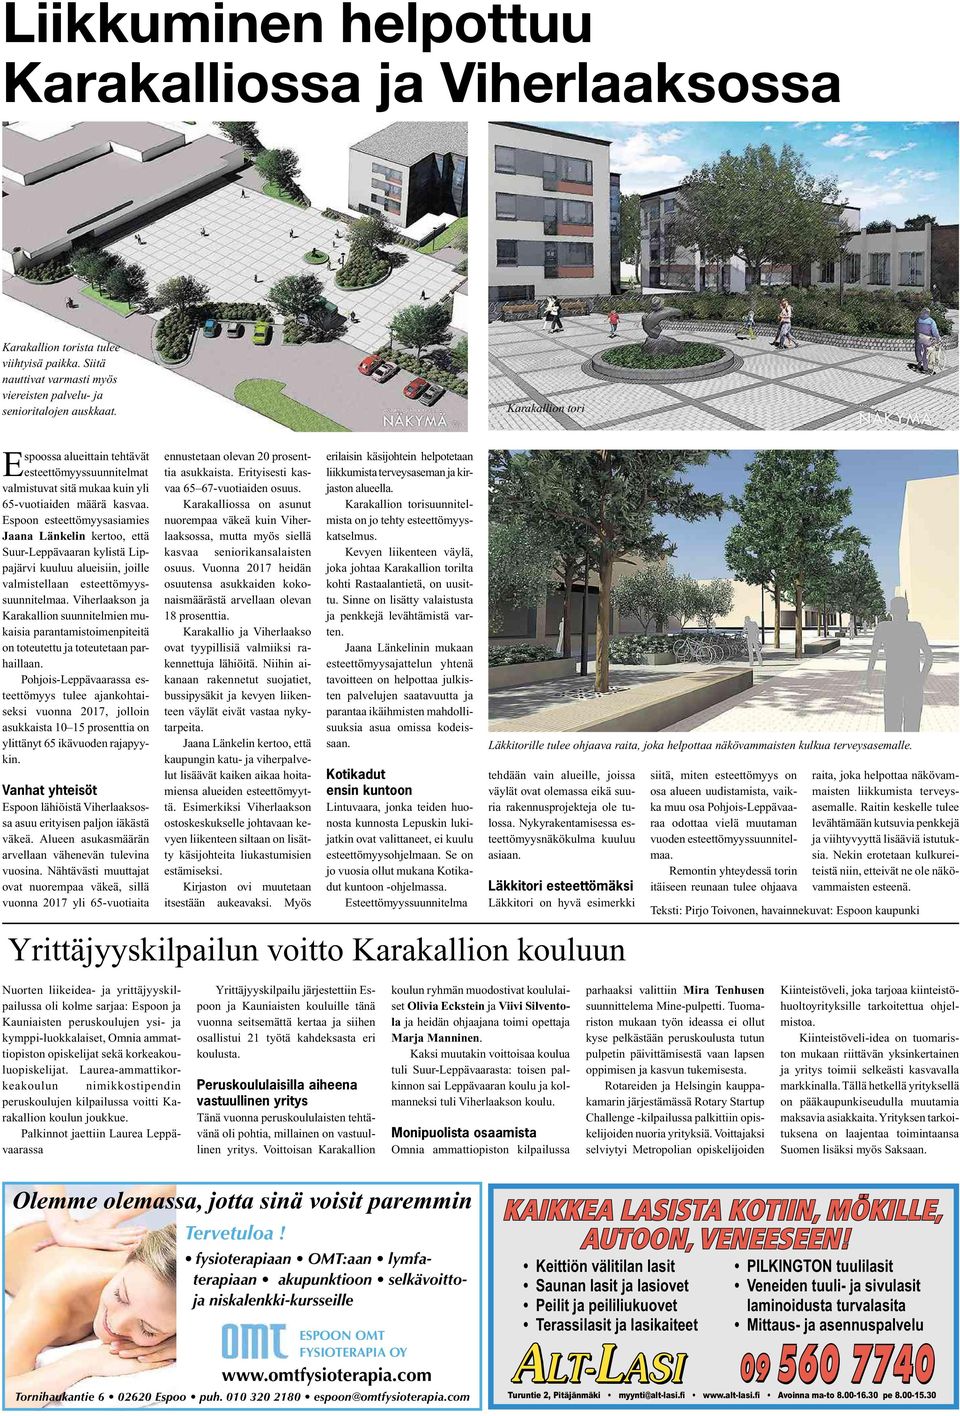 Espoon esteettömyysasiamies Jaana Länkelin kertoo, että Suur-Leppävaaran kylistä Lippajärvi kuuluu alueisiin, joille valmistellaan esteettömyyssuunnitelmaa.